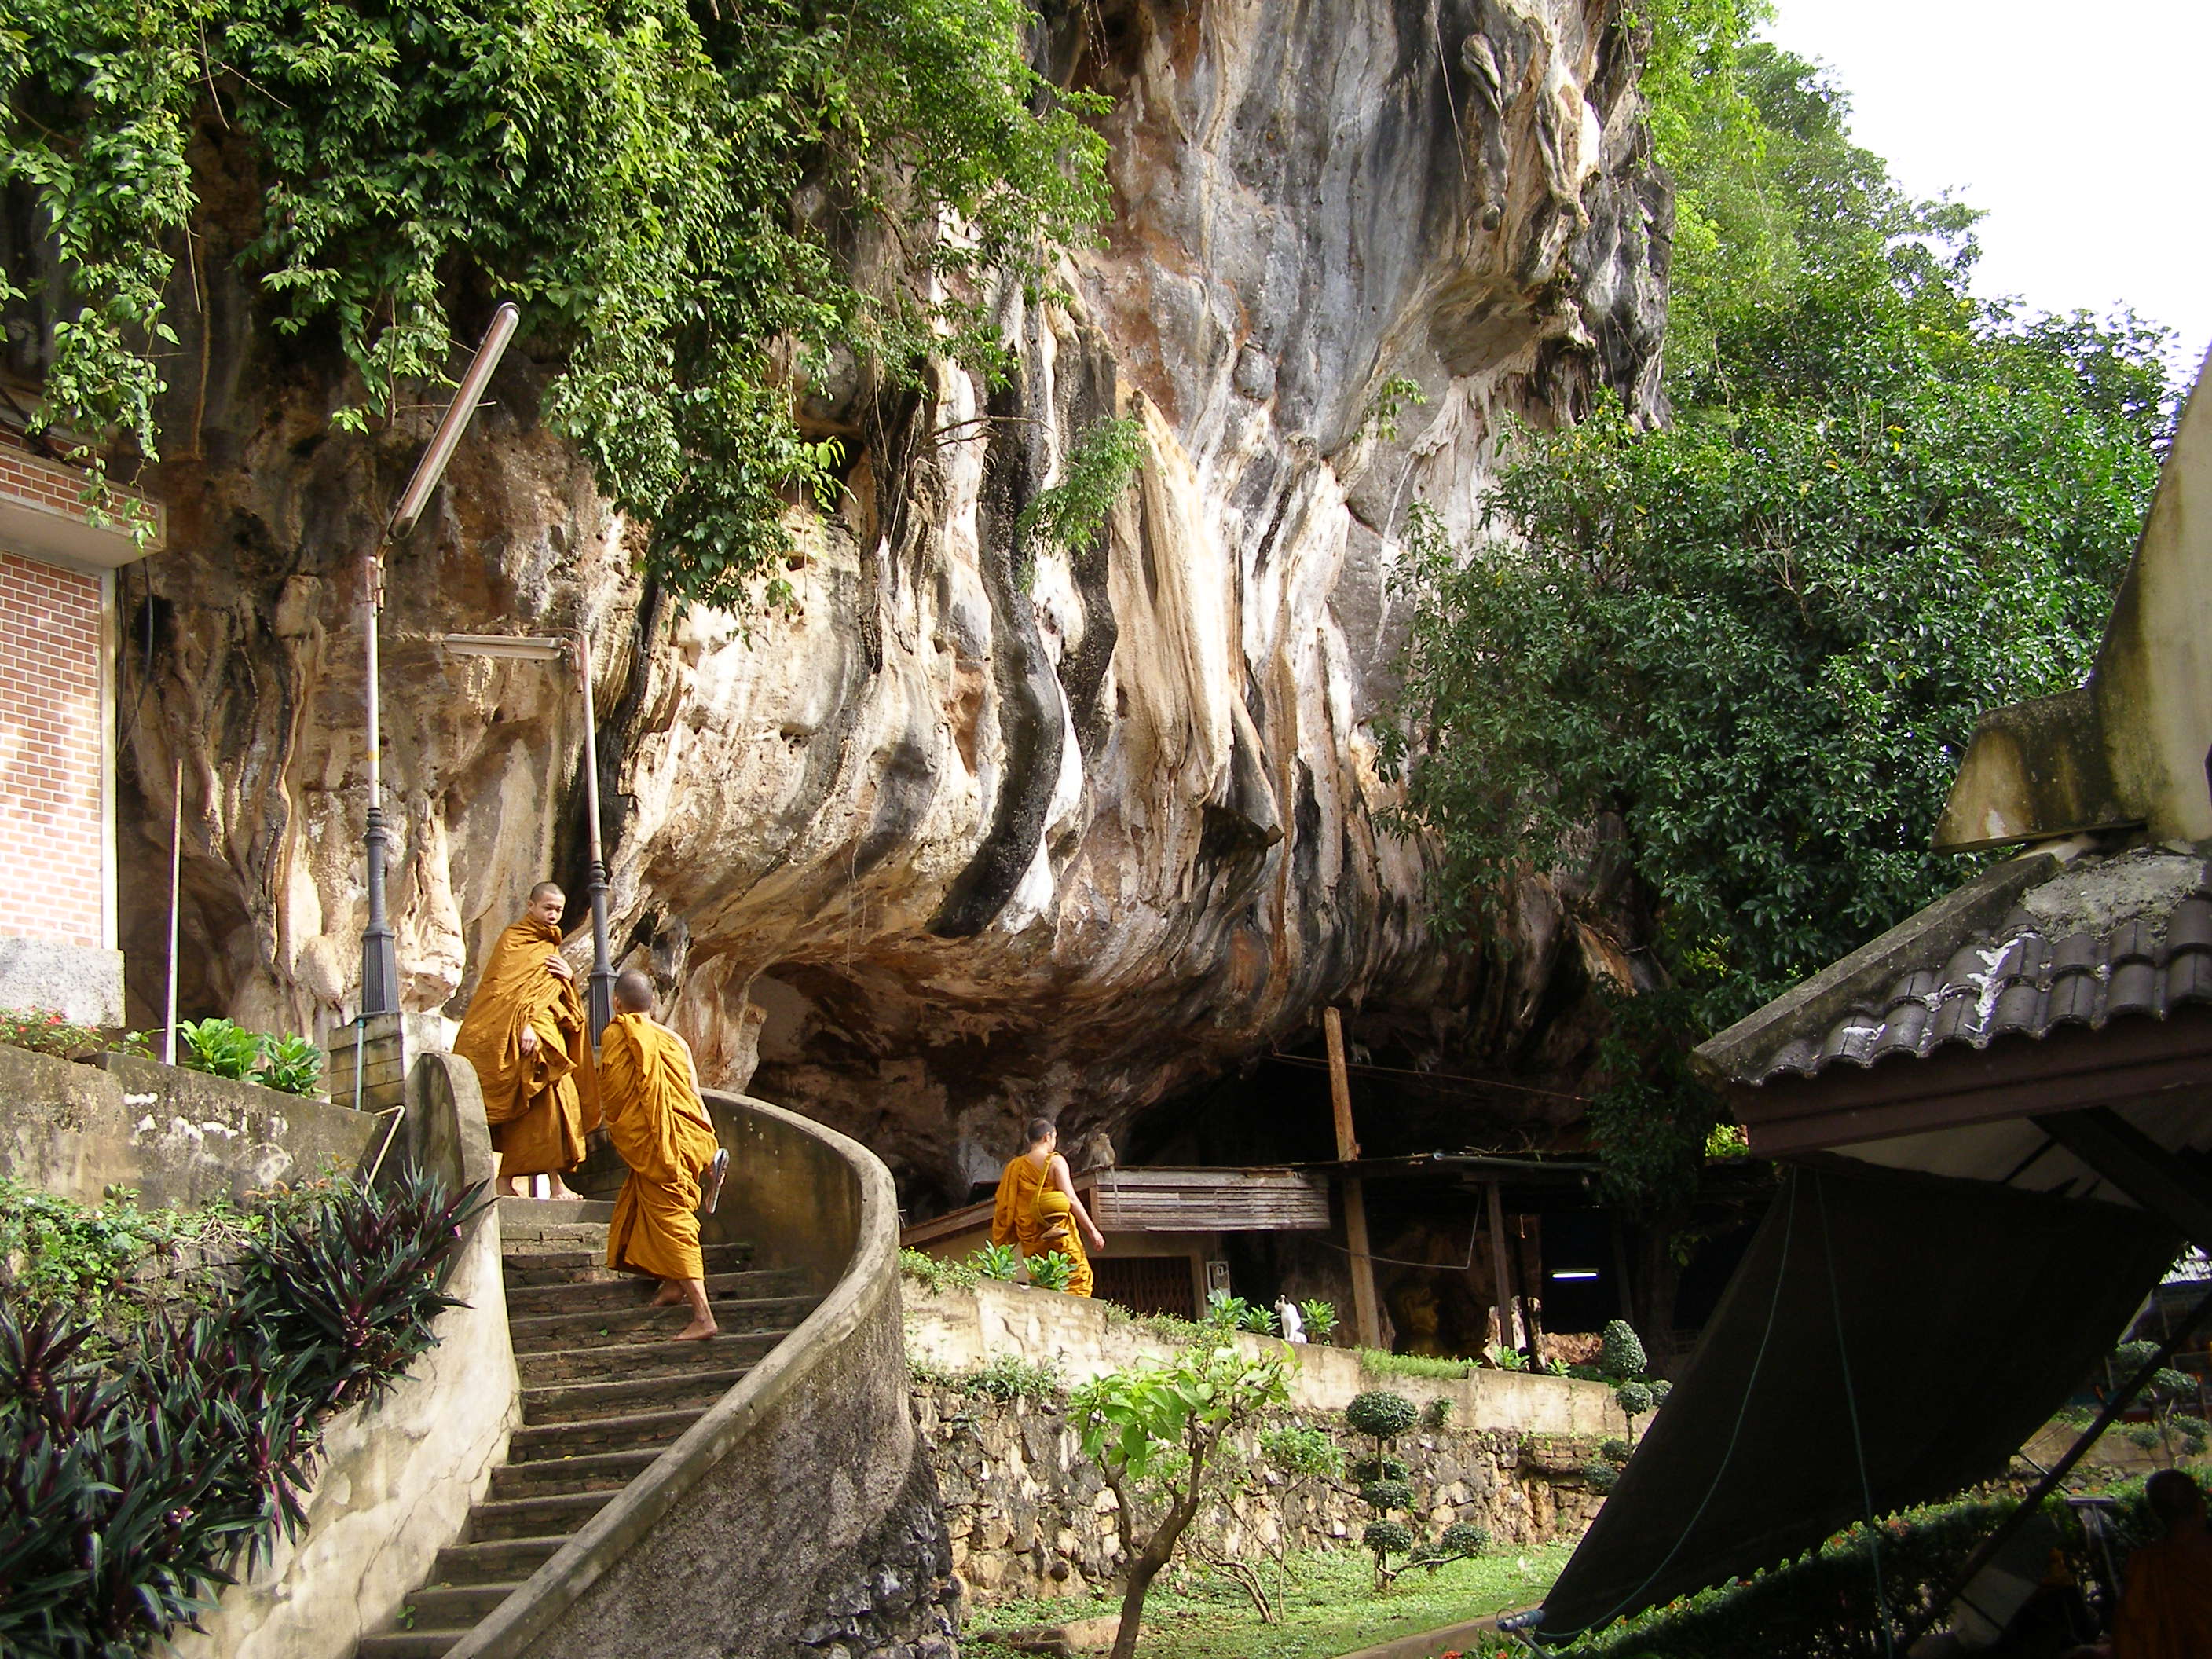 cesta k buddhistickemu klastoru v skalach na ostrove Krabi